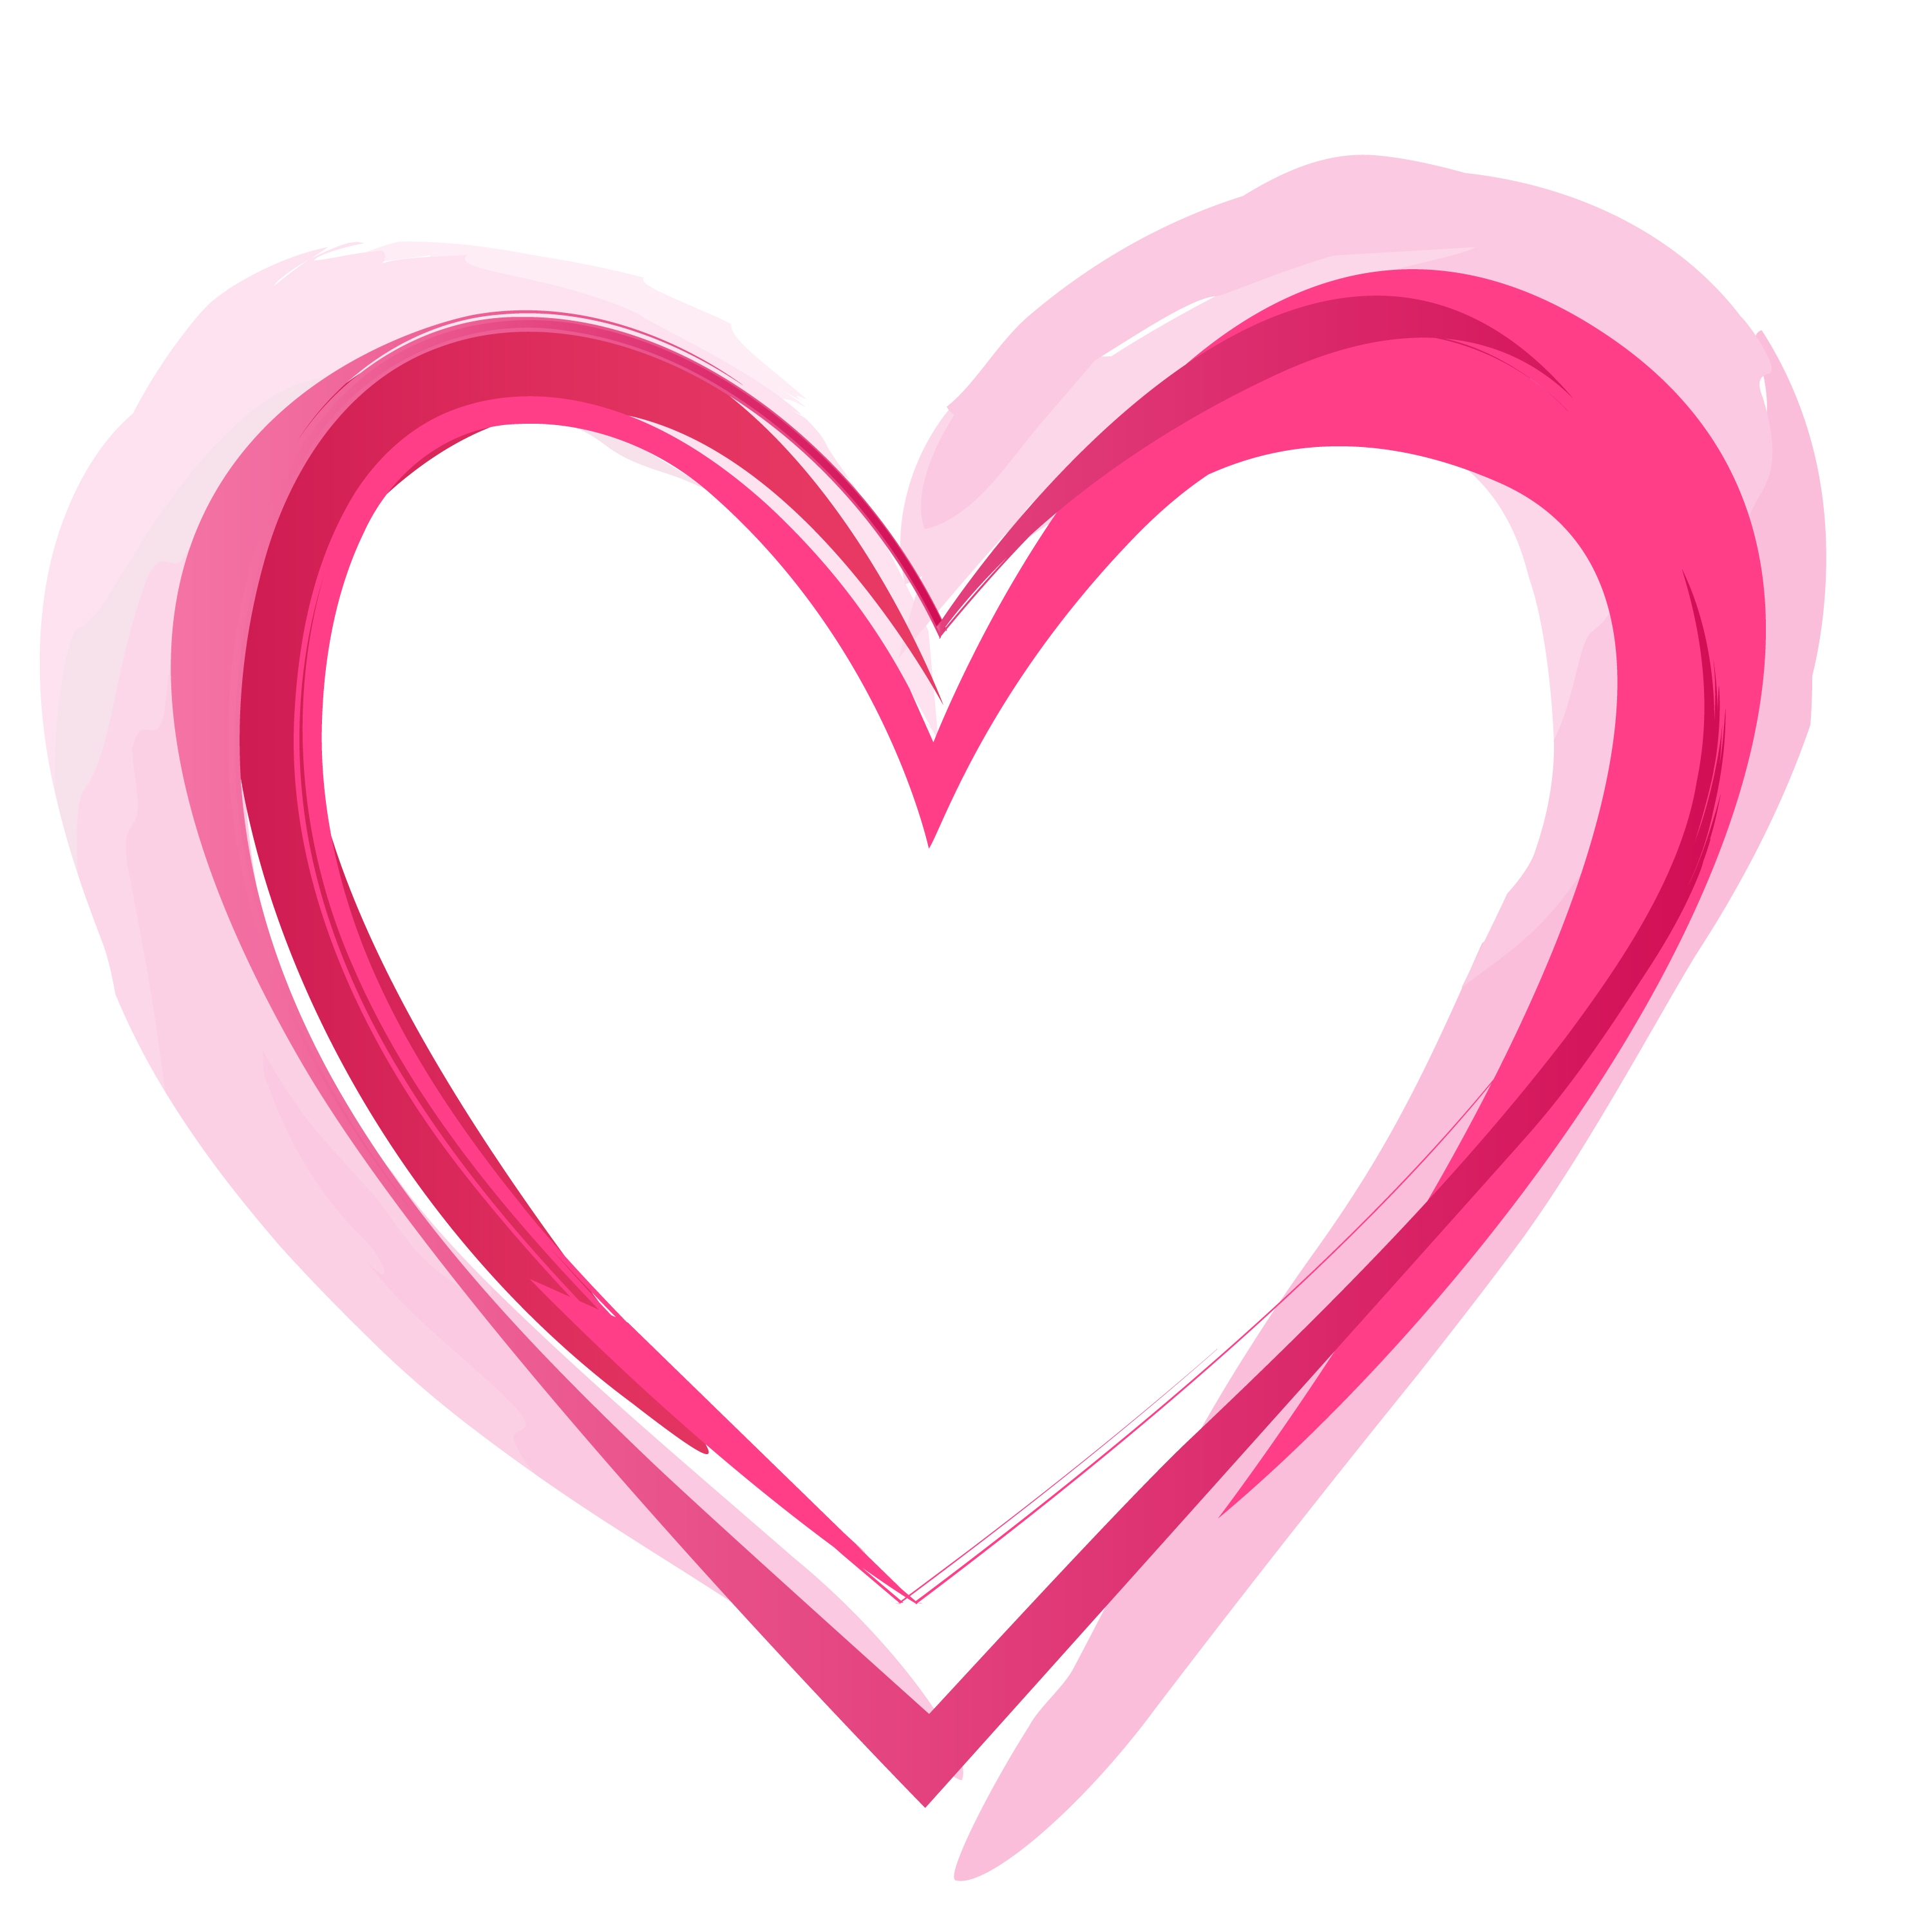 Love : Love Heart Wallpaper 3000x3000Px Heart Images. Heart ...